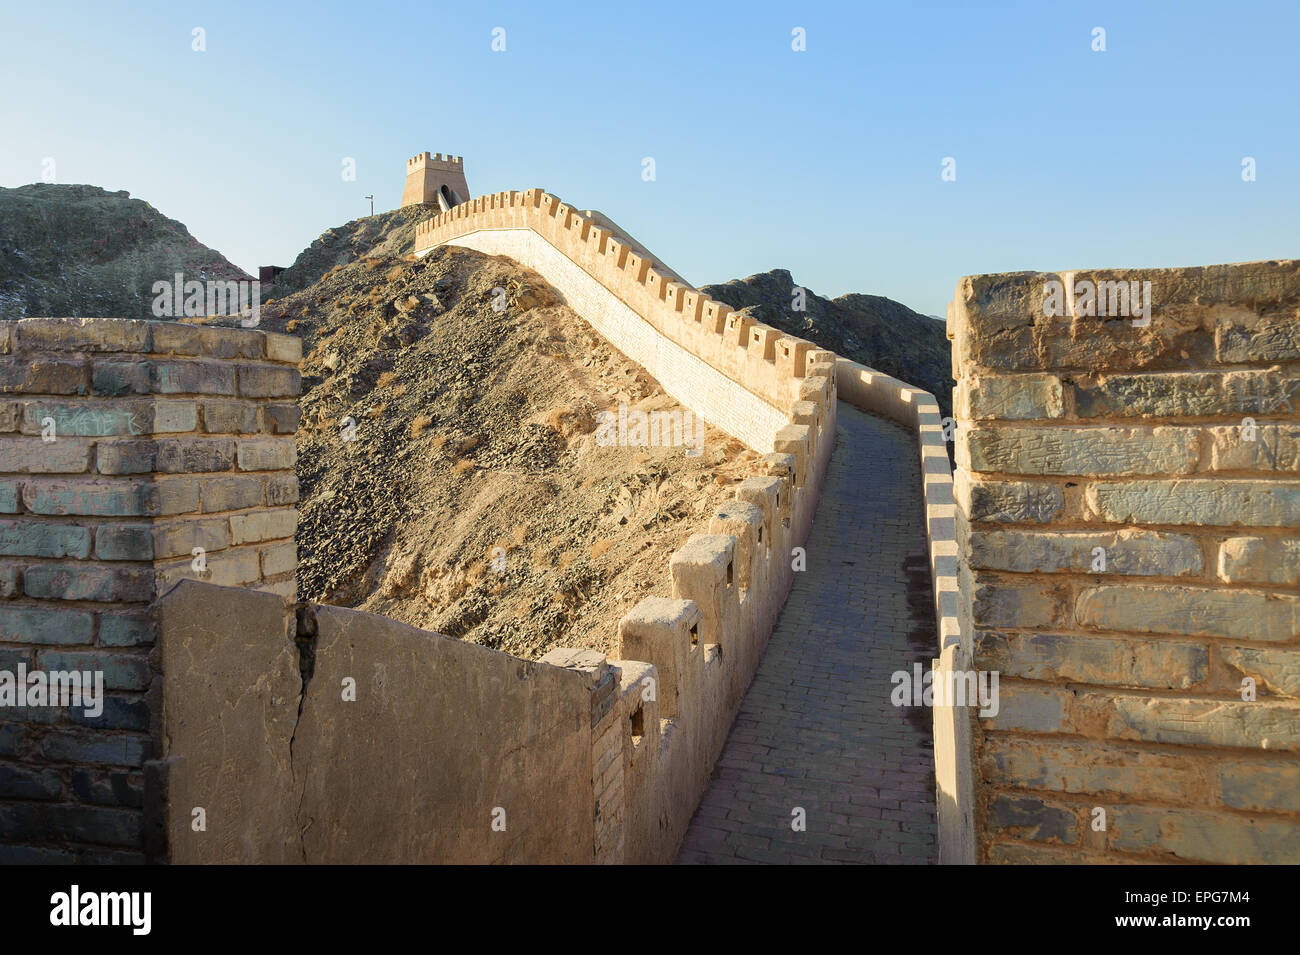 Surplombant Jiayuguan Grande muraille dans la province de Gansu, partie de l'itinéraire de la route de la soie à la section la plus occidentale de la Grande Muraille. Banque D'Images